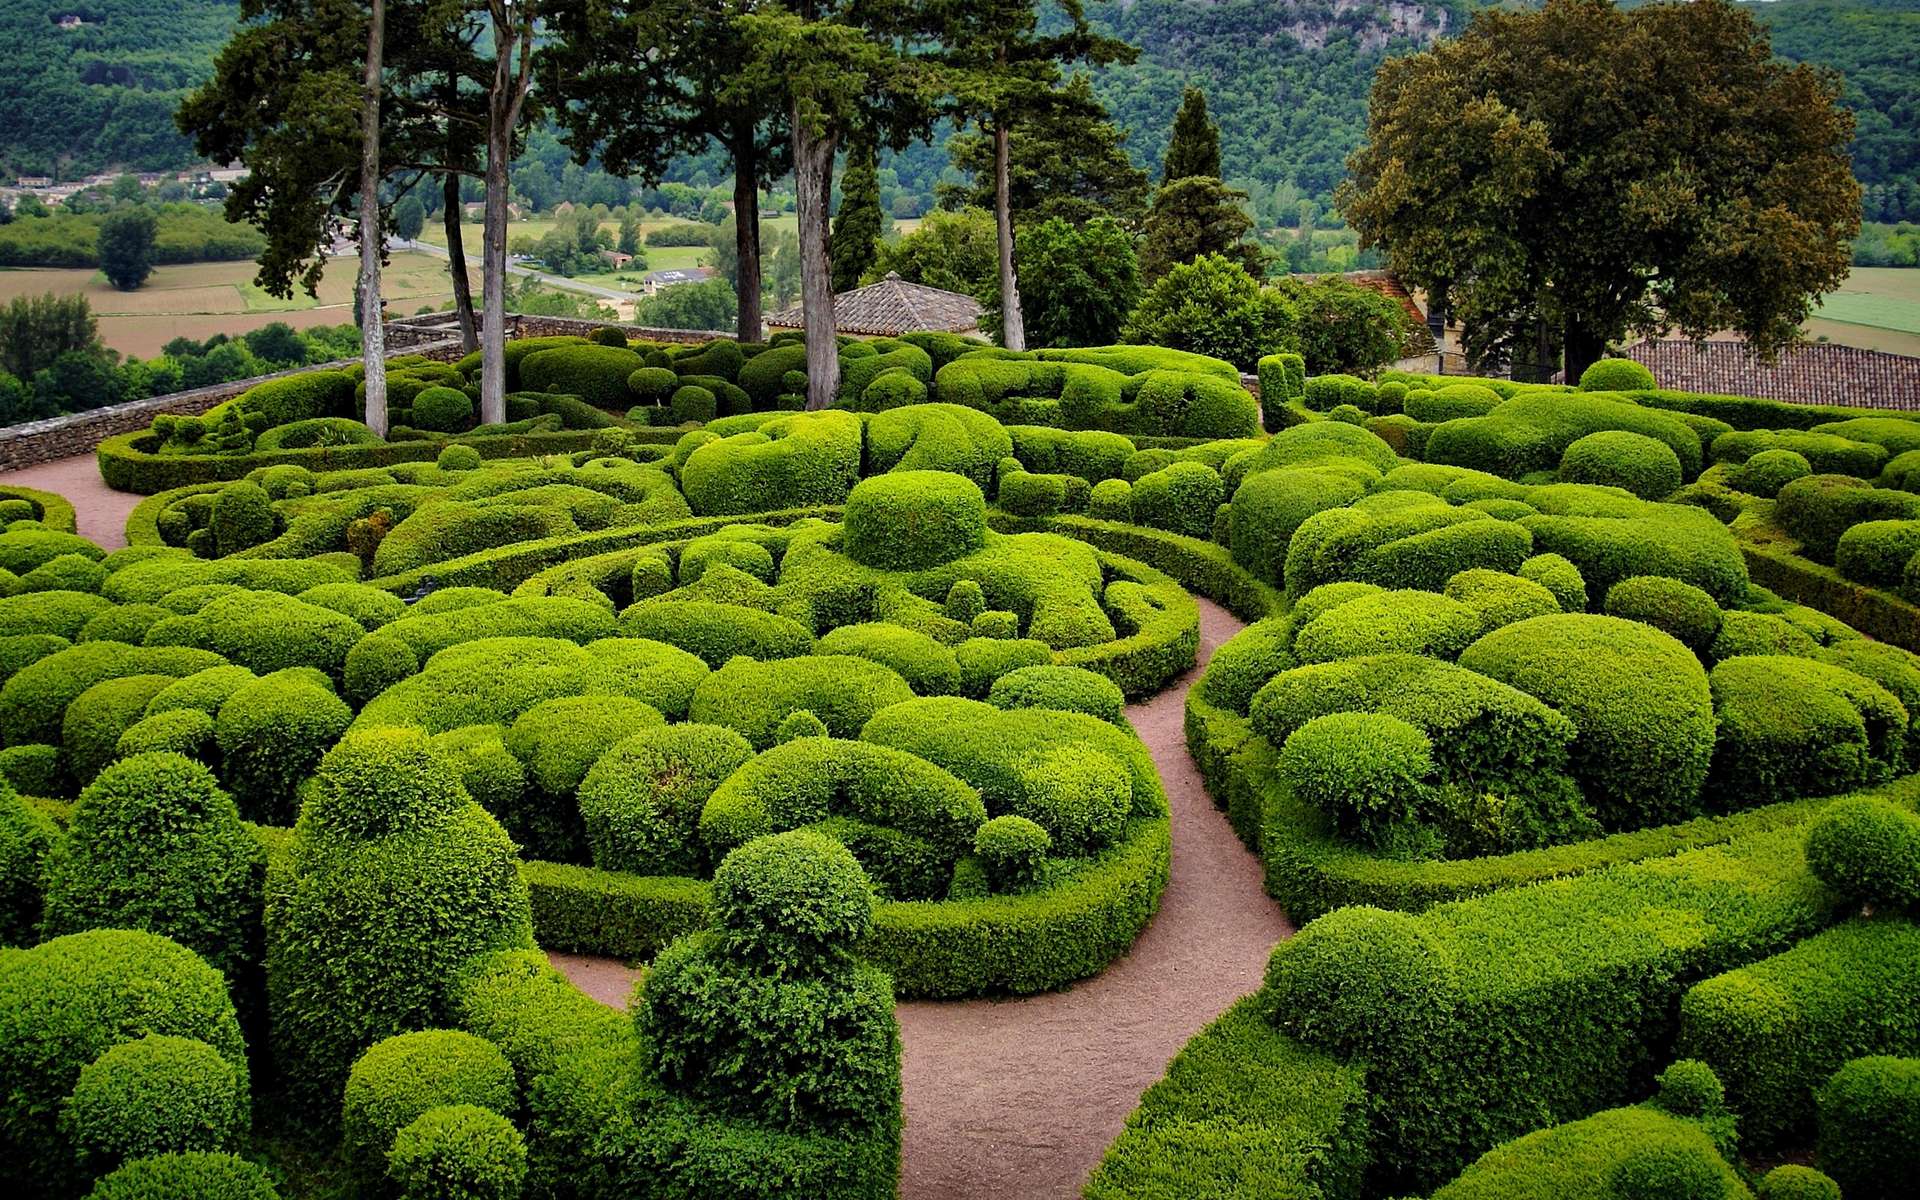 Visiter un parc ou un jardin. © guillaume3176, Adobe Stock